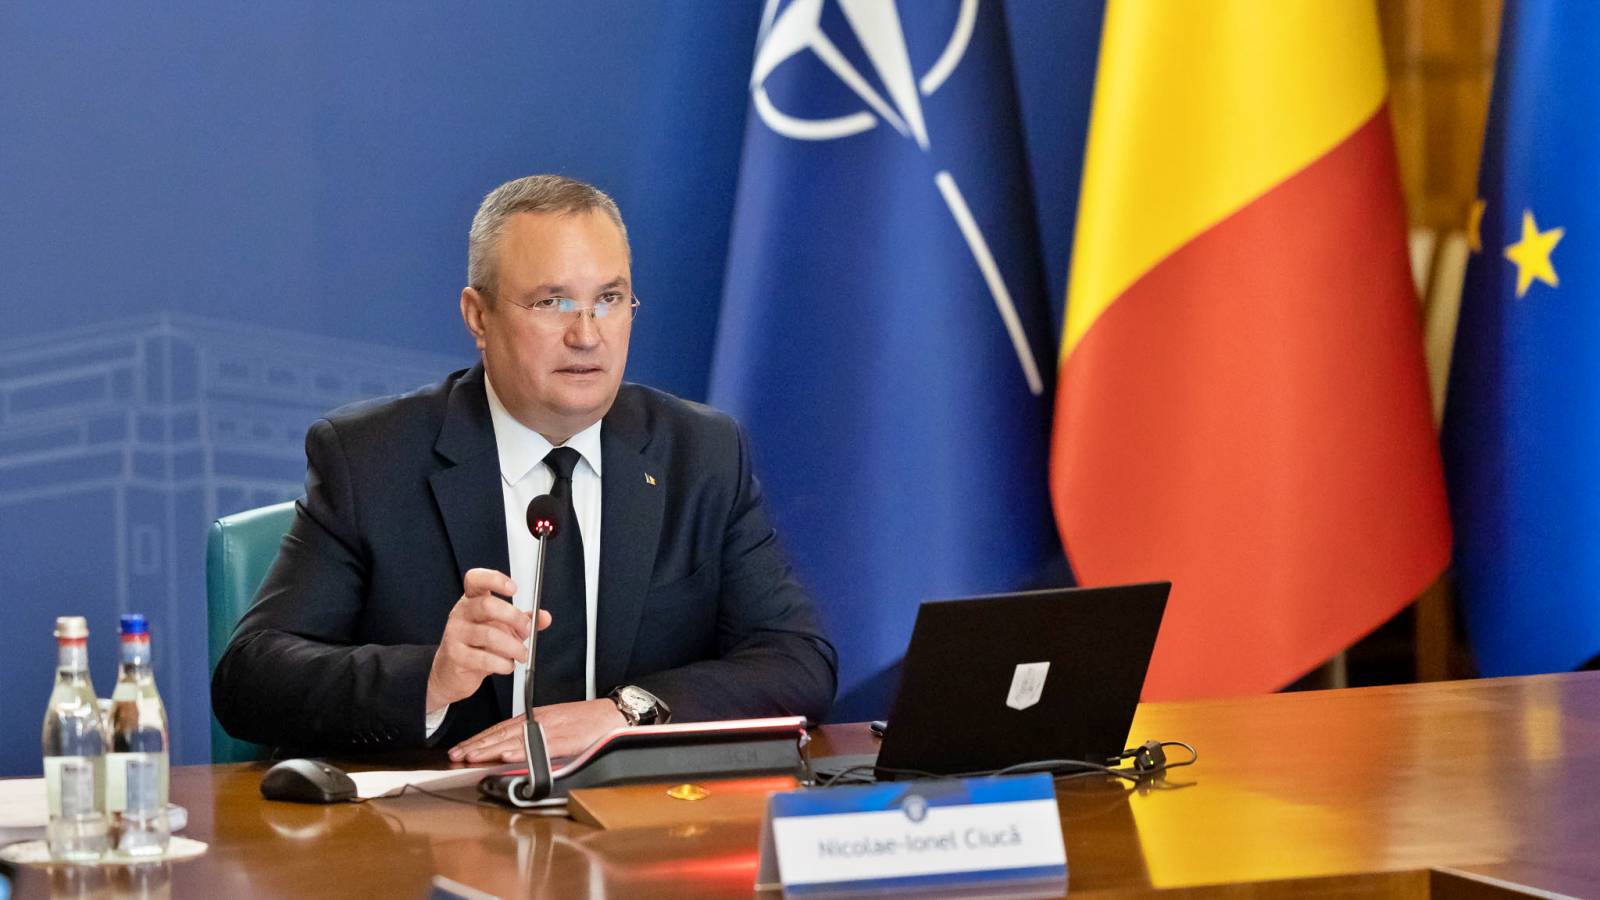 Nicolae Ciuca Ważna zapowiedź z europejską premierą dla Rumunii